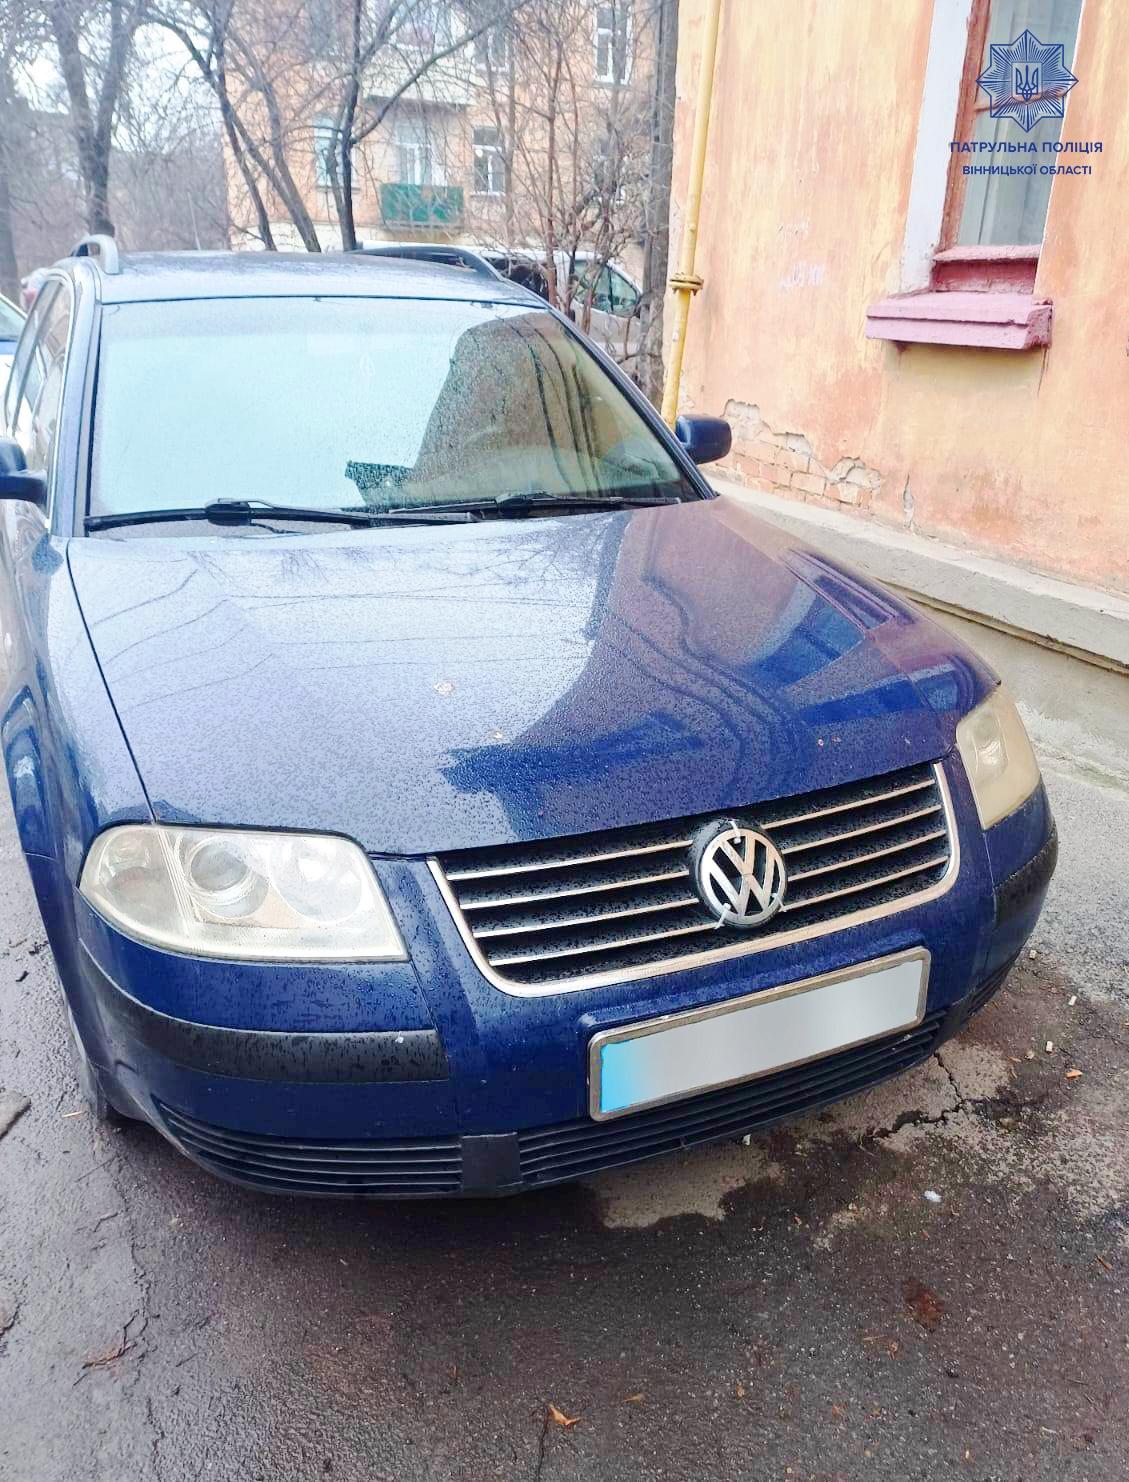 Нетверезі водії, які позбавлені прав, спричинили аварію у Вінниці (Фото)